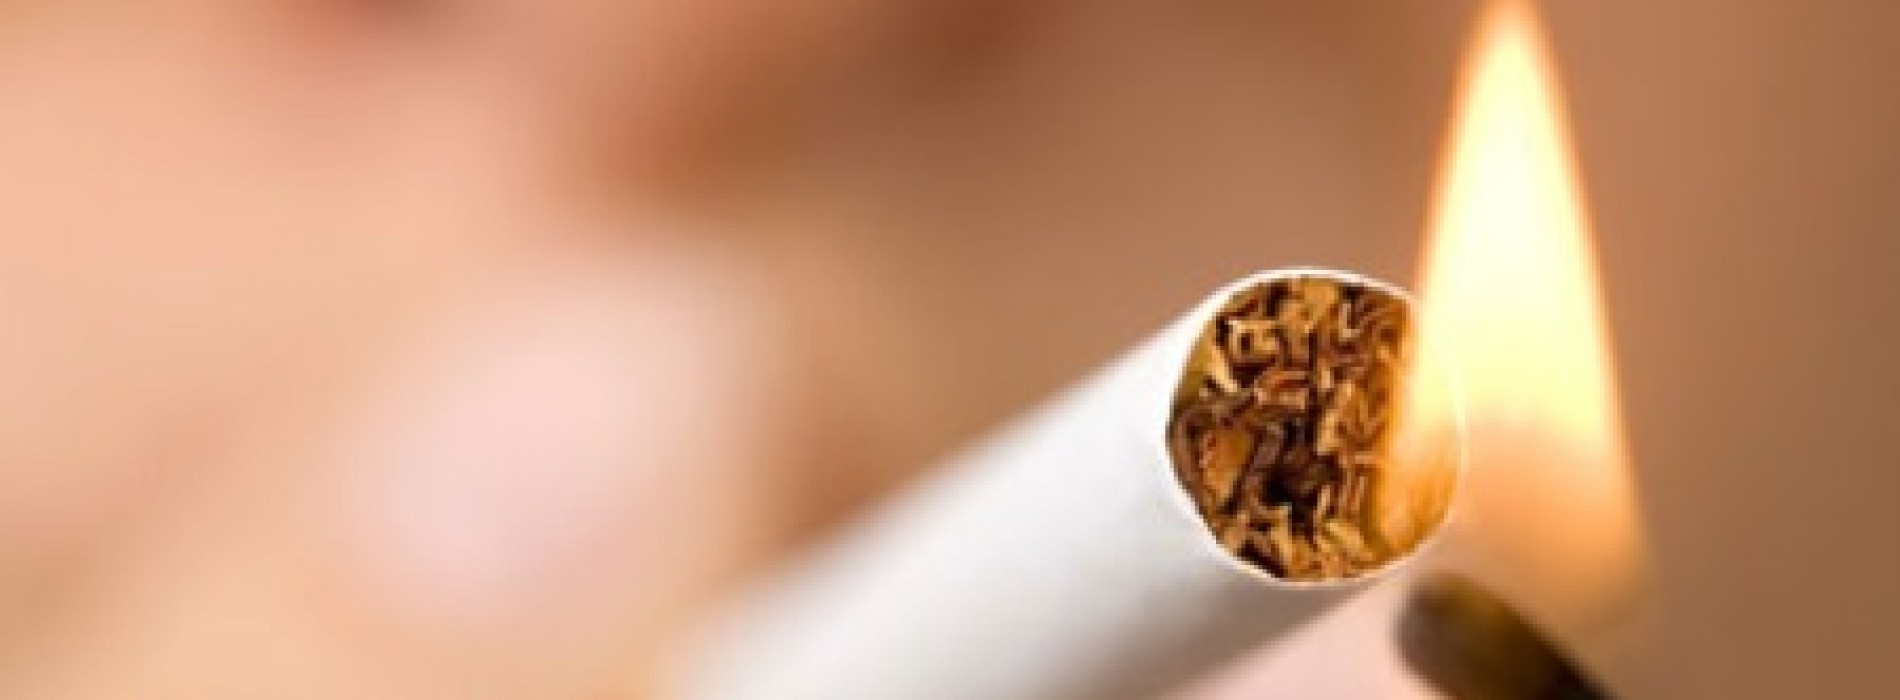 Kiedy pracownik może wyjść na papierosa?